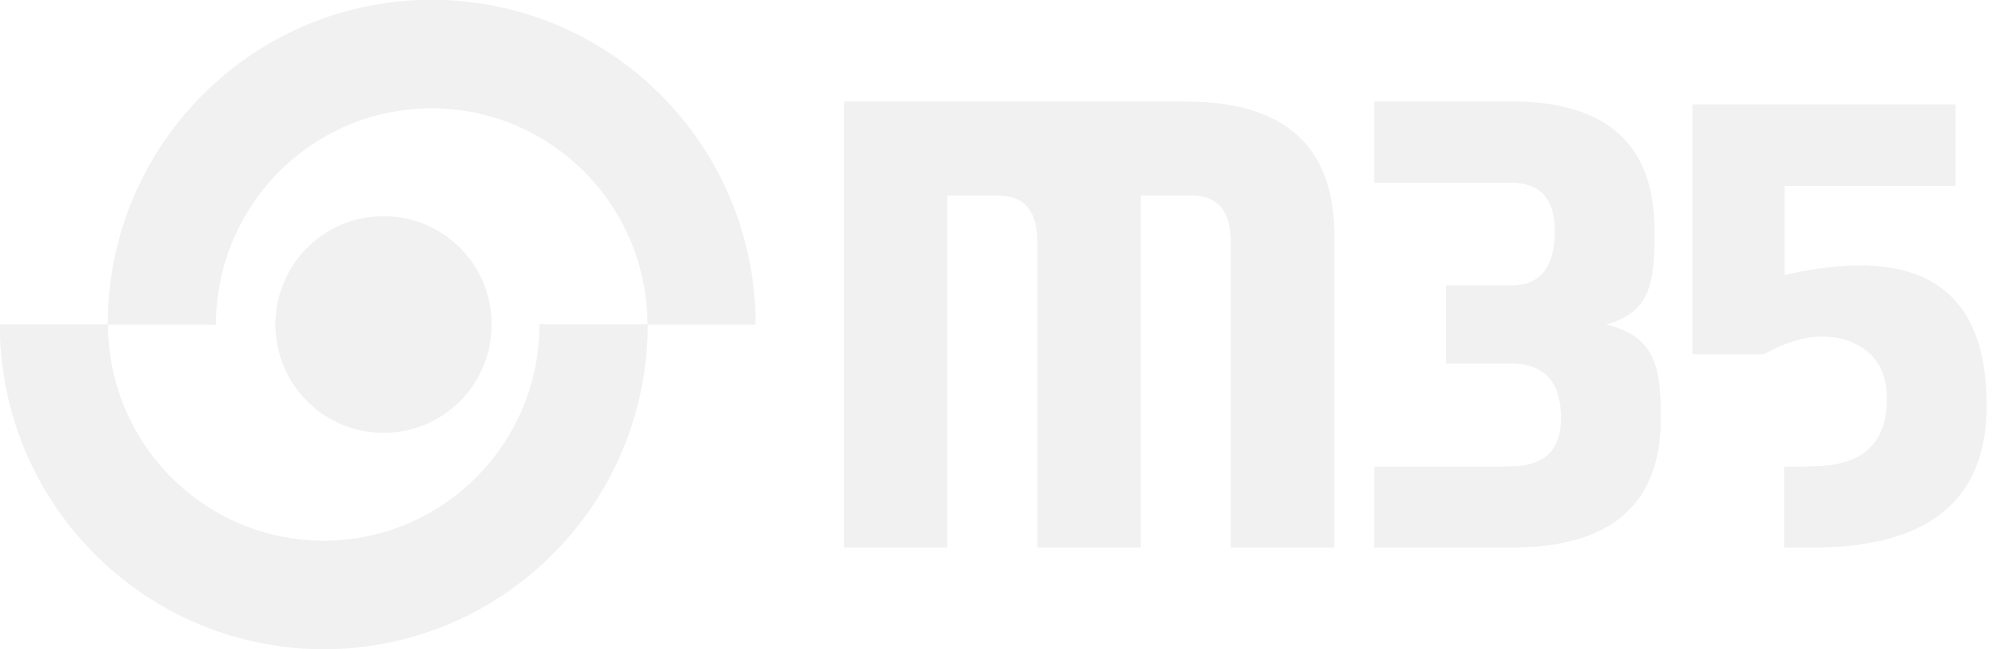 m35 logo